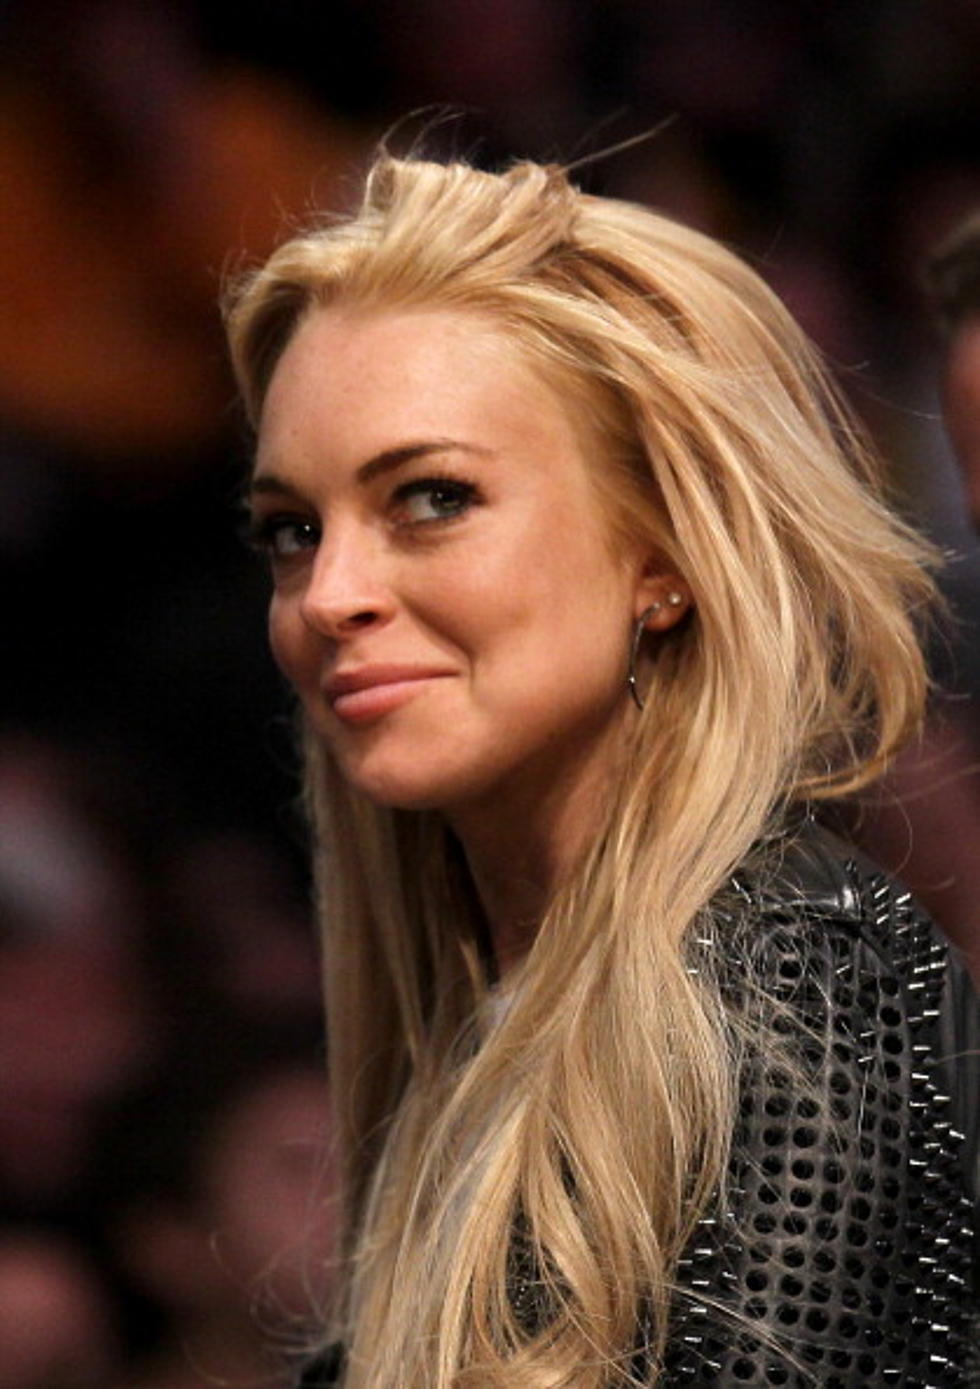 Lindsay Lohan To The Big House?